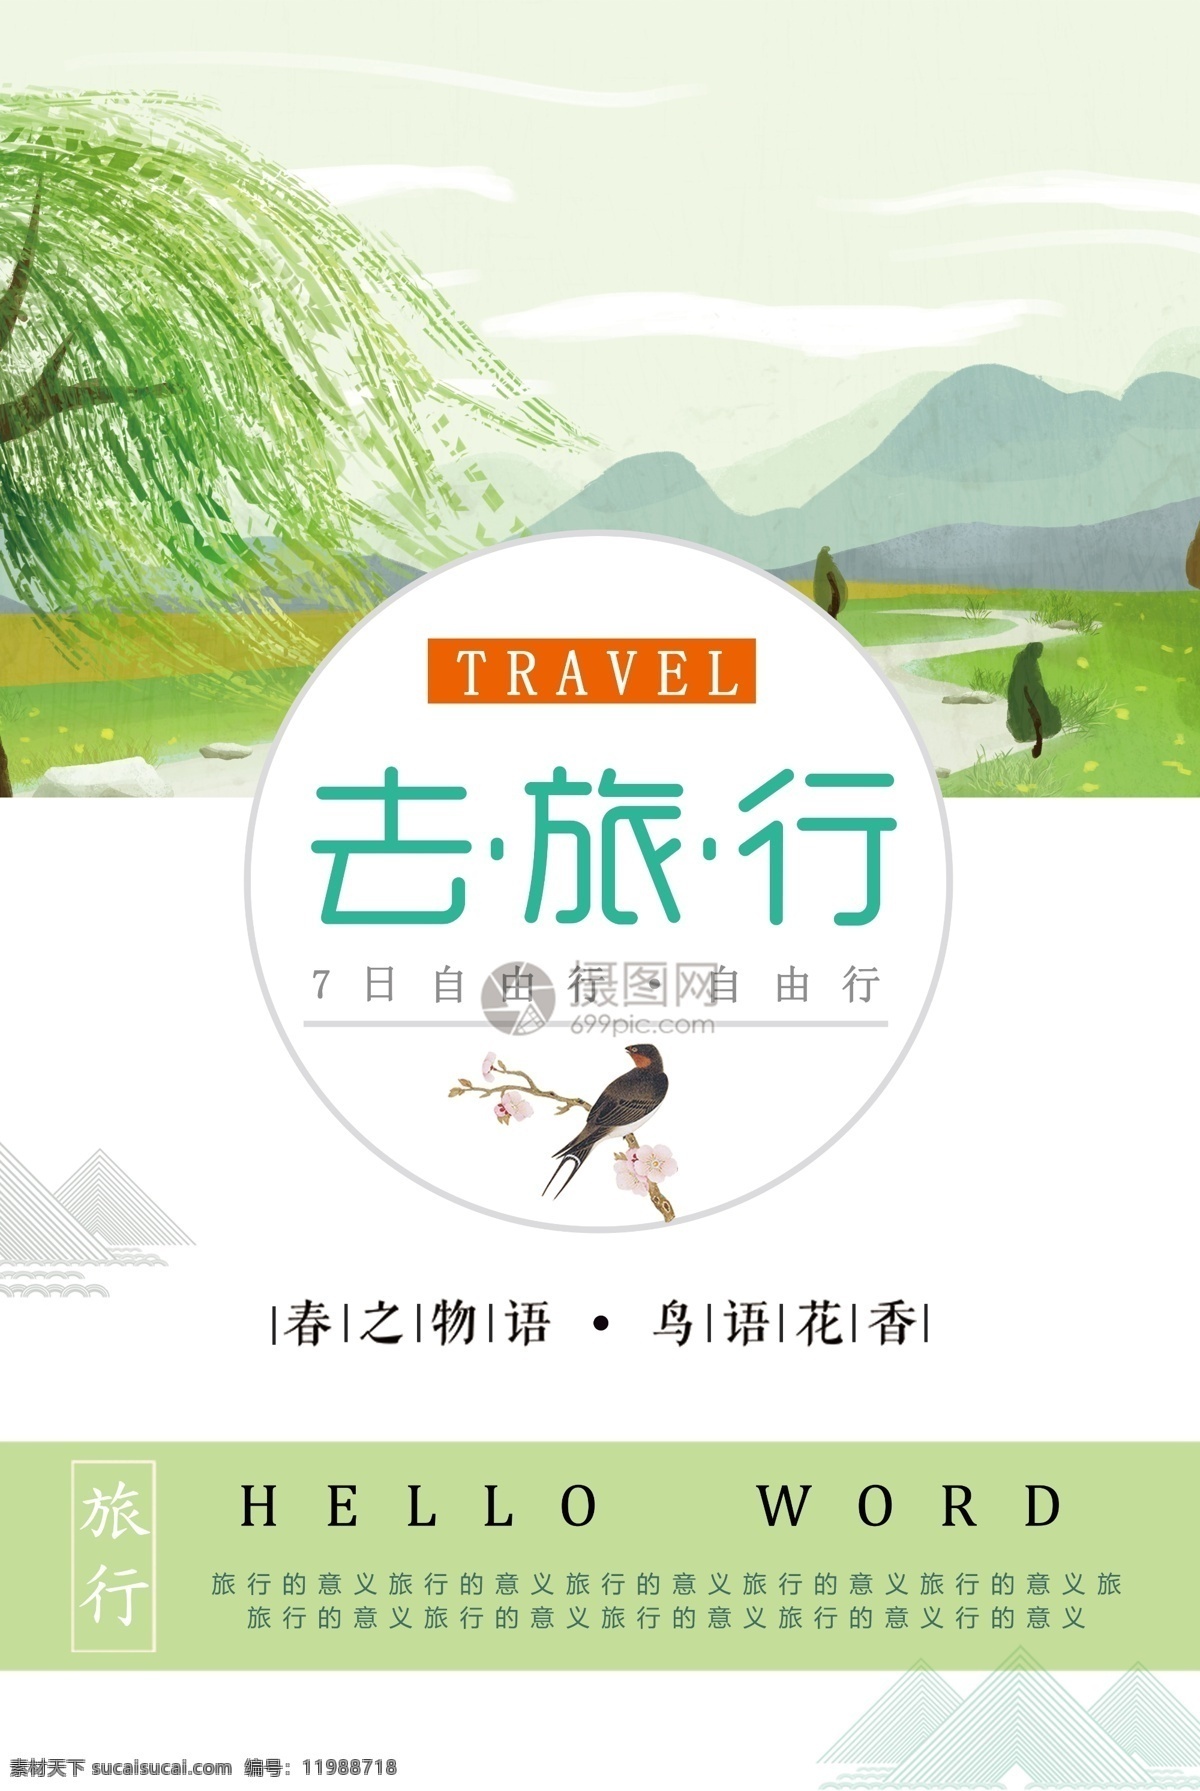 去 旅行 旅游 旅途 文艺 清新 简约 旅行社 旅行团 跟团游 旅行海报 绿色